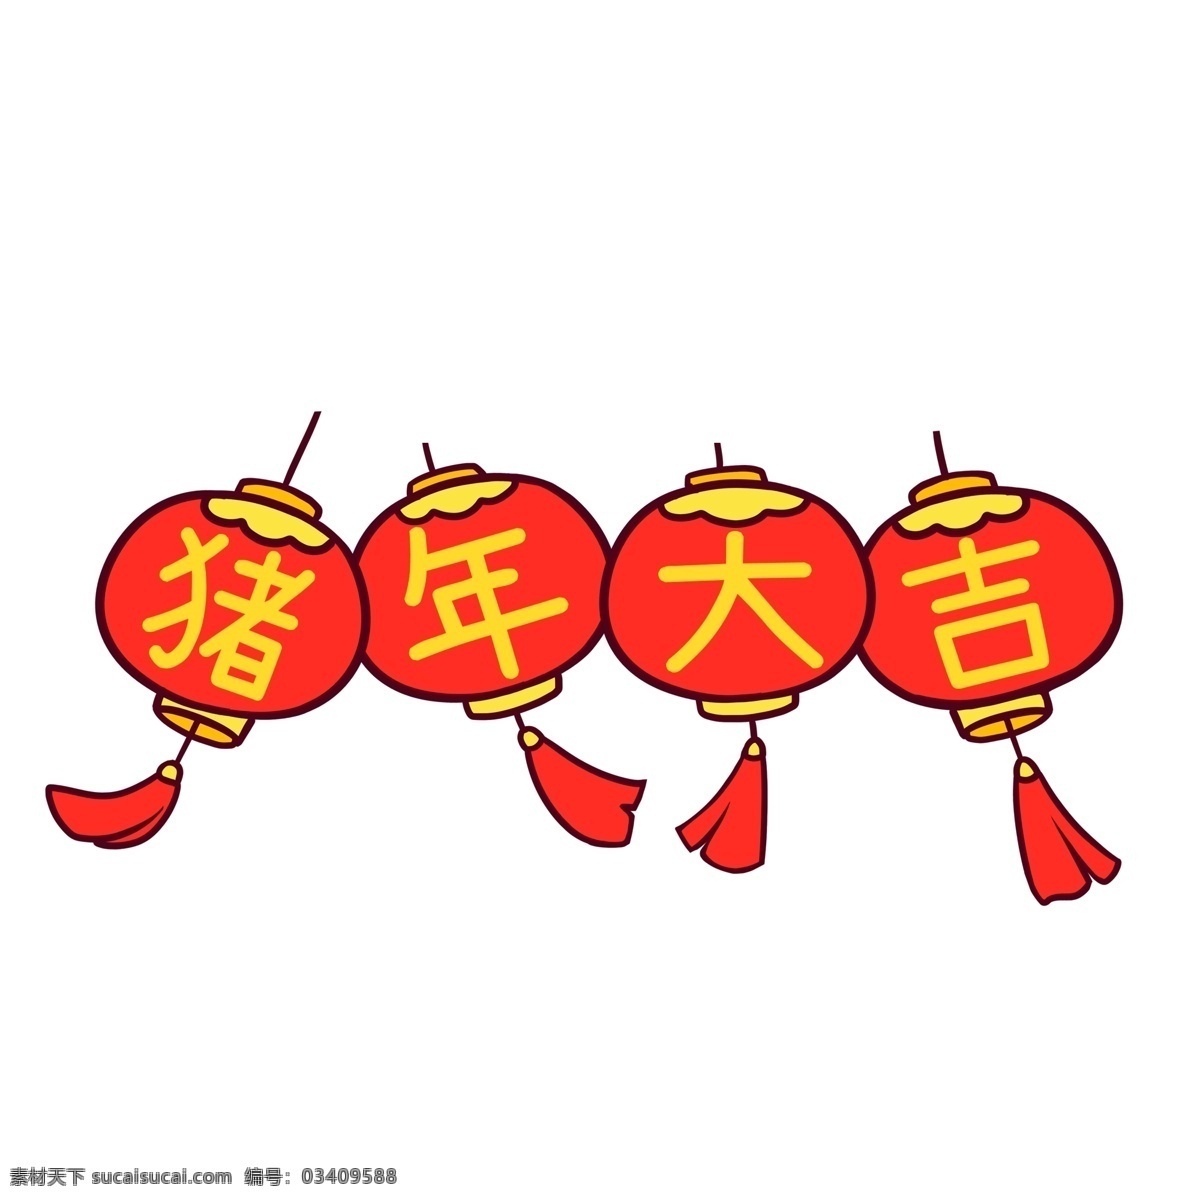 猪年 大吉 灯笼 元素 红色 插画 喜庆 中国风 潮漫 手绘 猪年大吉 节日 春节 新春 新年